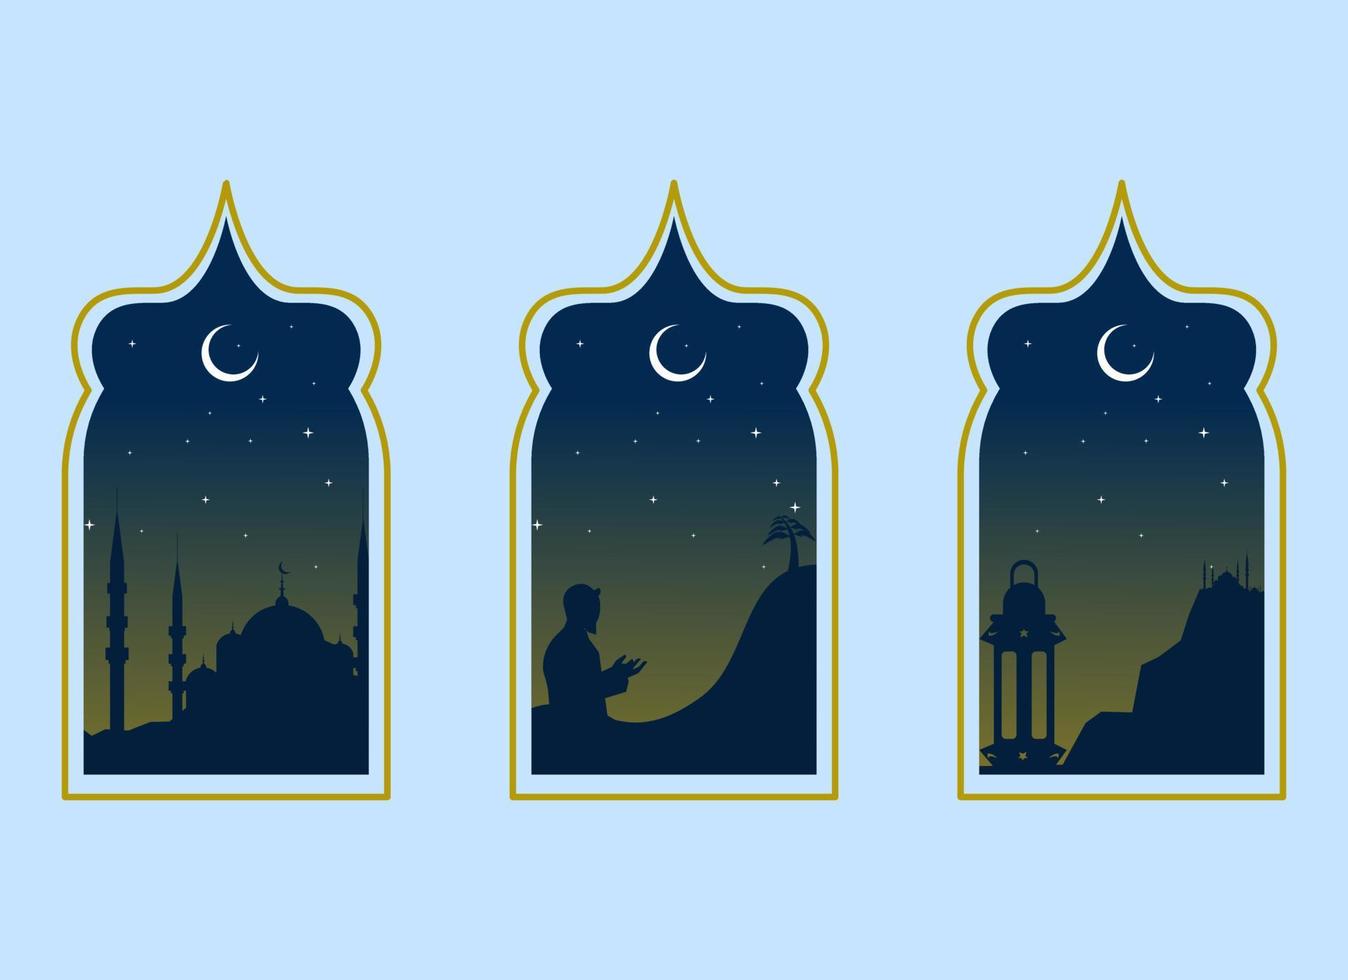 Ramadã kareem ilustração com mesquita silhueta e luz das estrelas e lua, fundo o negócio rótulo, convite modelo, social meios de comunicação, etc. Ramadã kareem temático plano vetor ilustração.